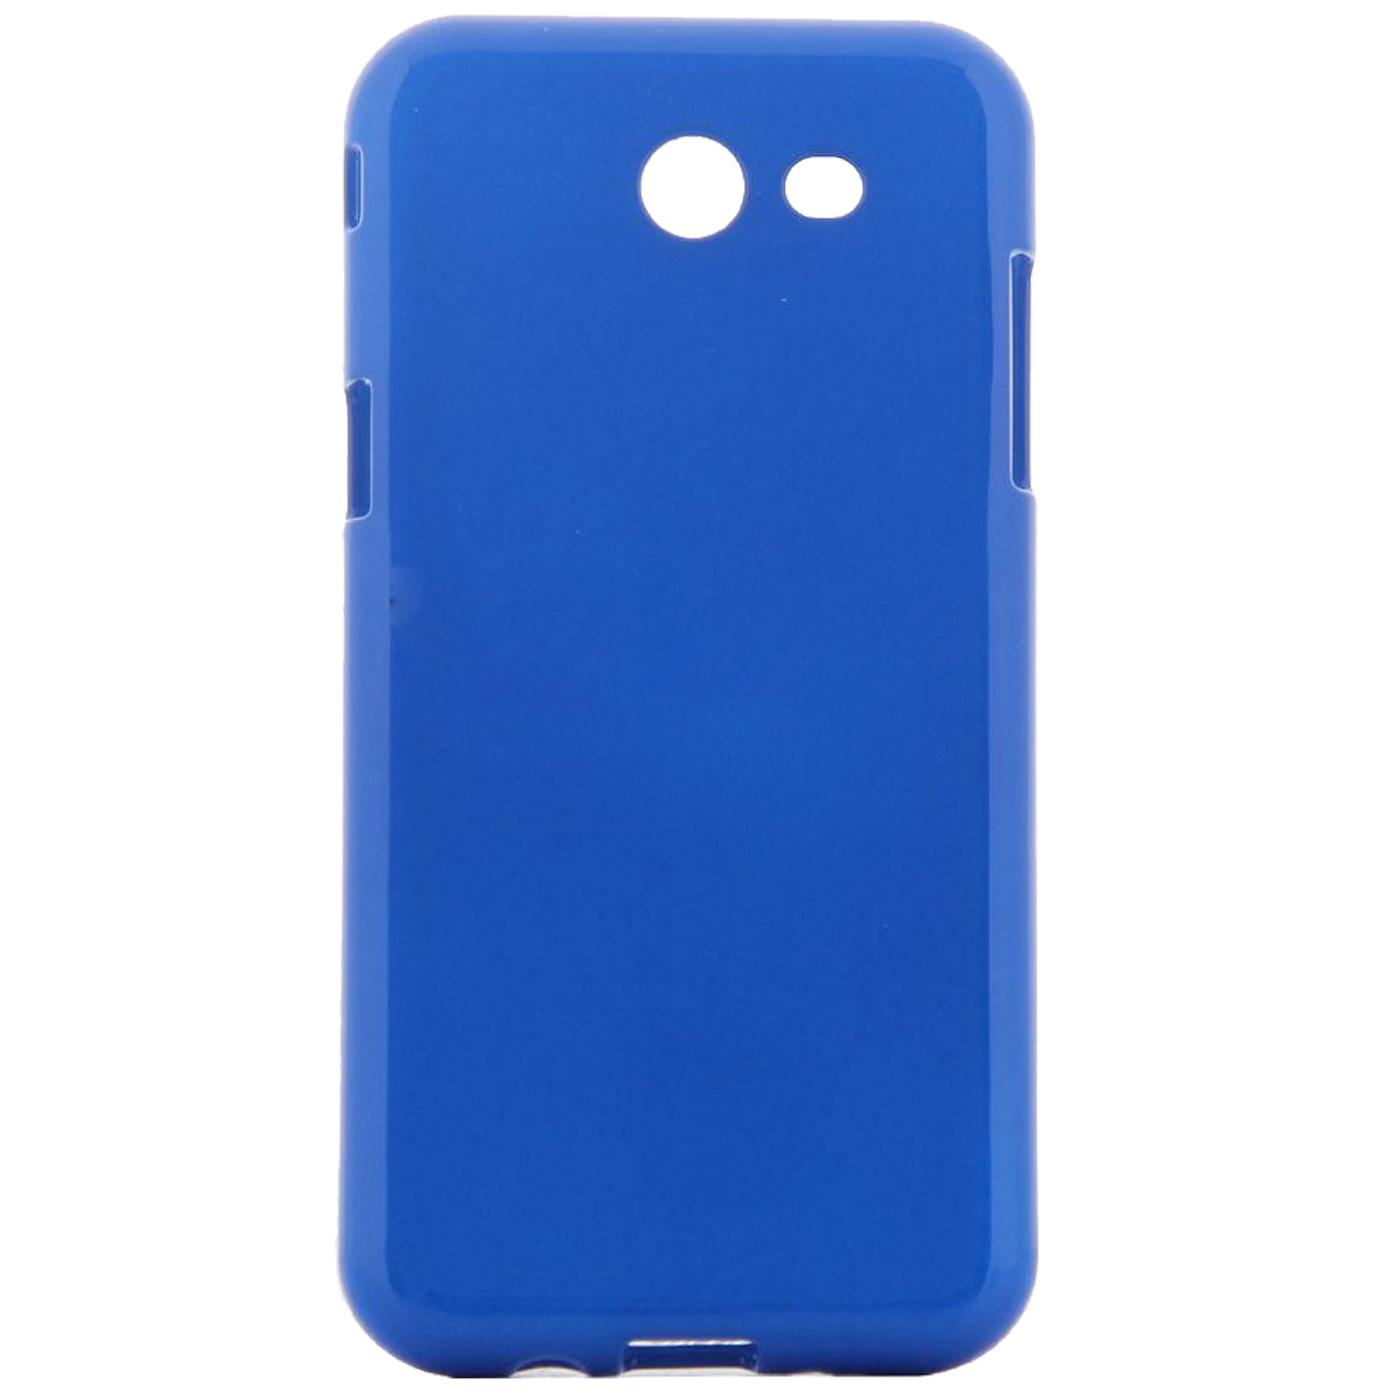 Futrola za mobitel Samsung J3 2017, silikonska, plava